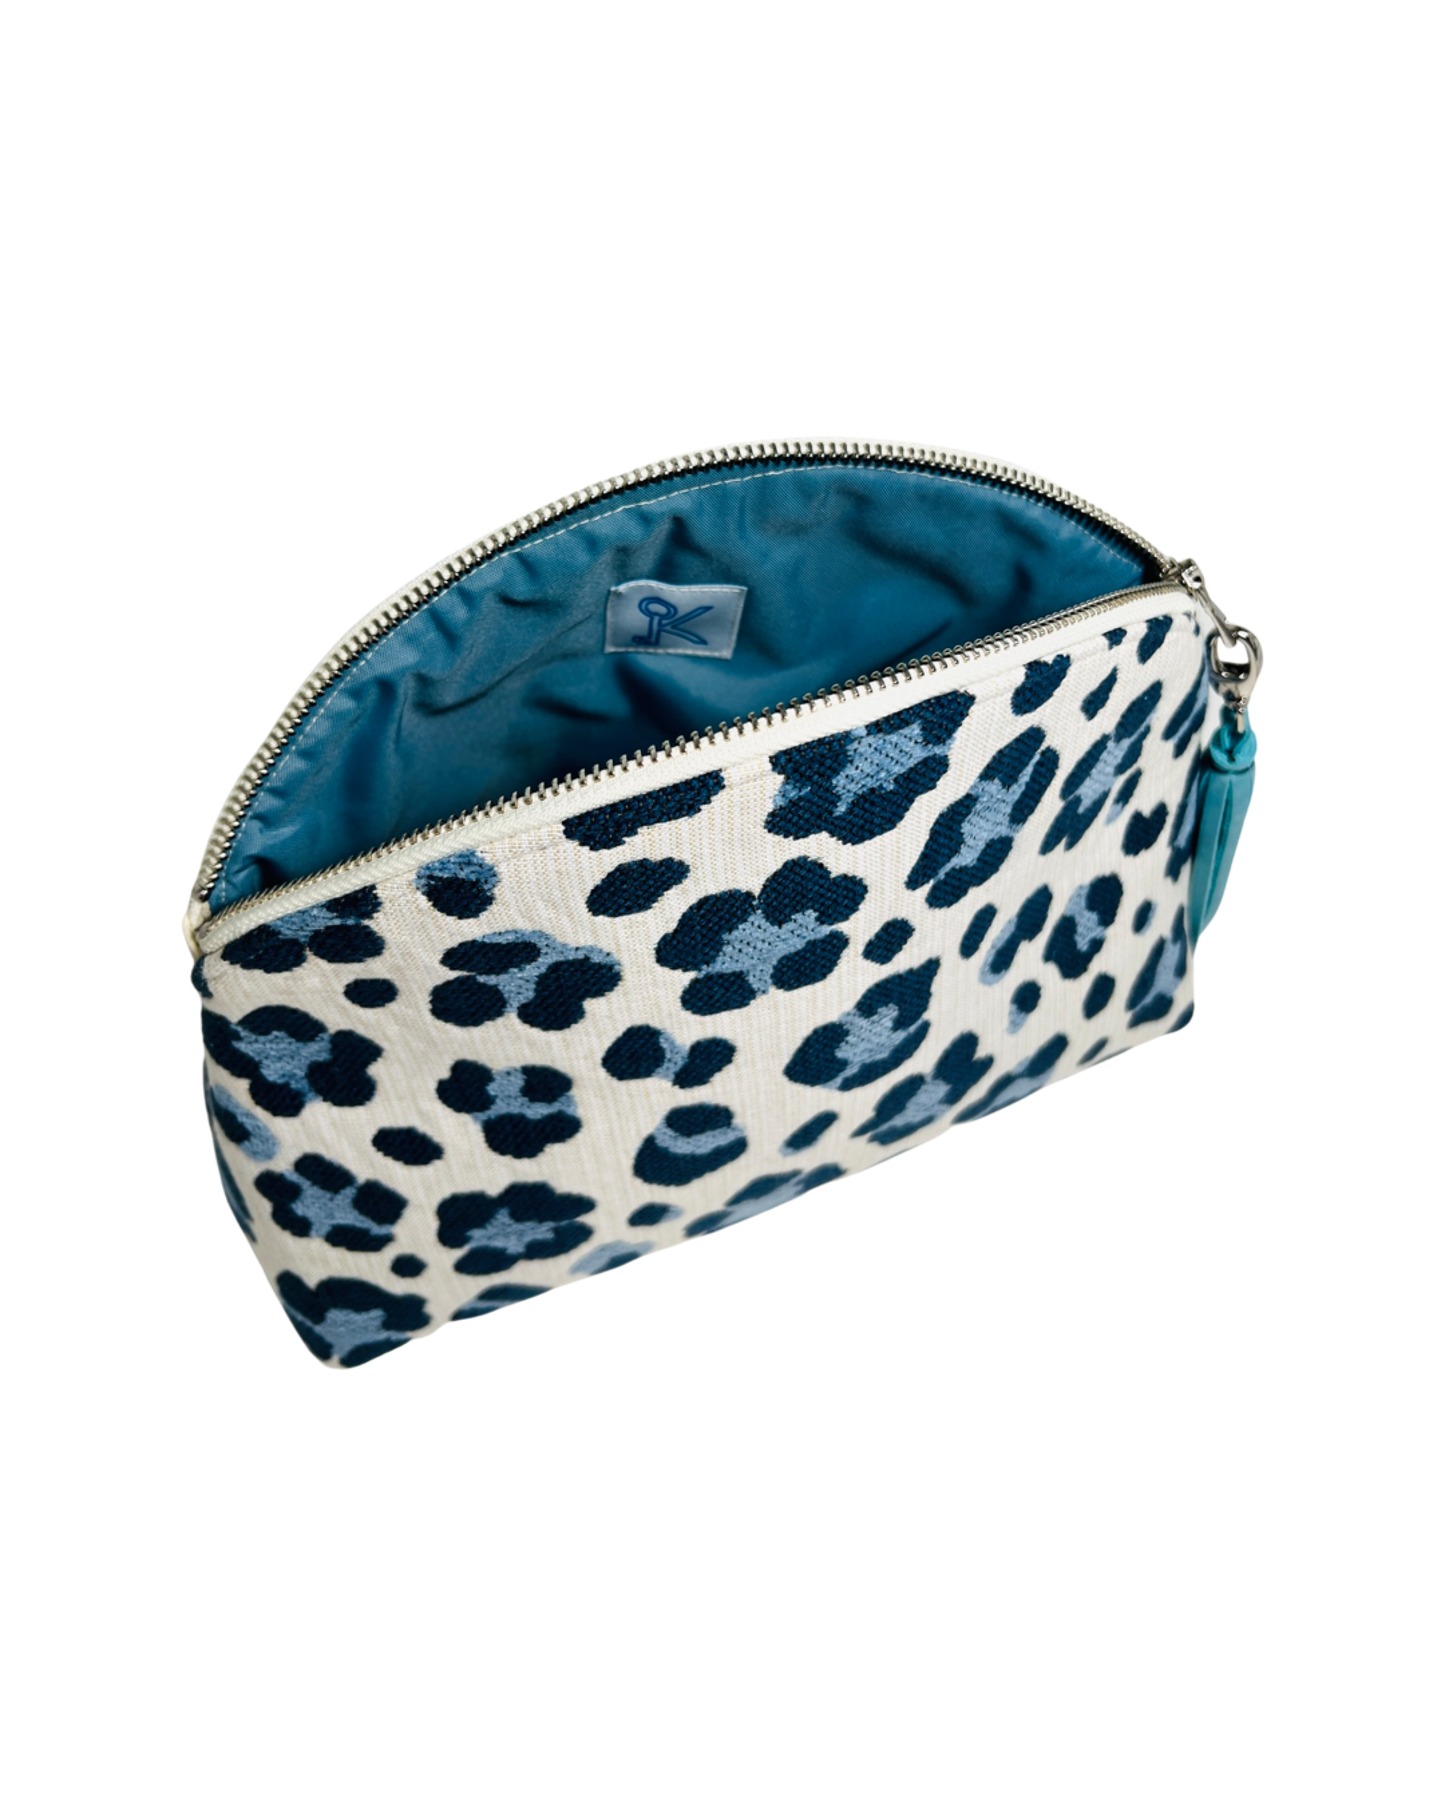 Blue Leopard Performance Pouch